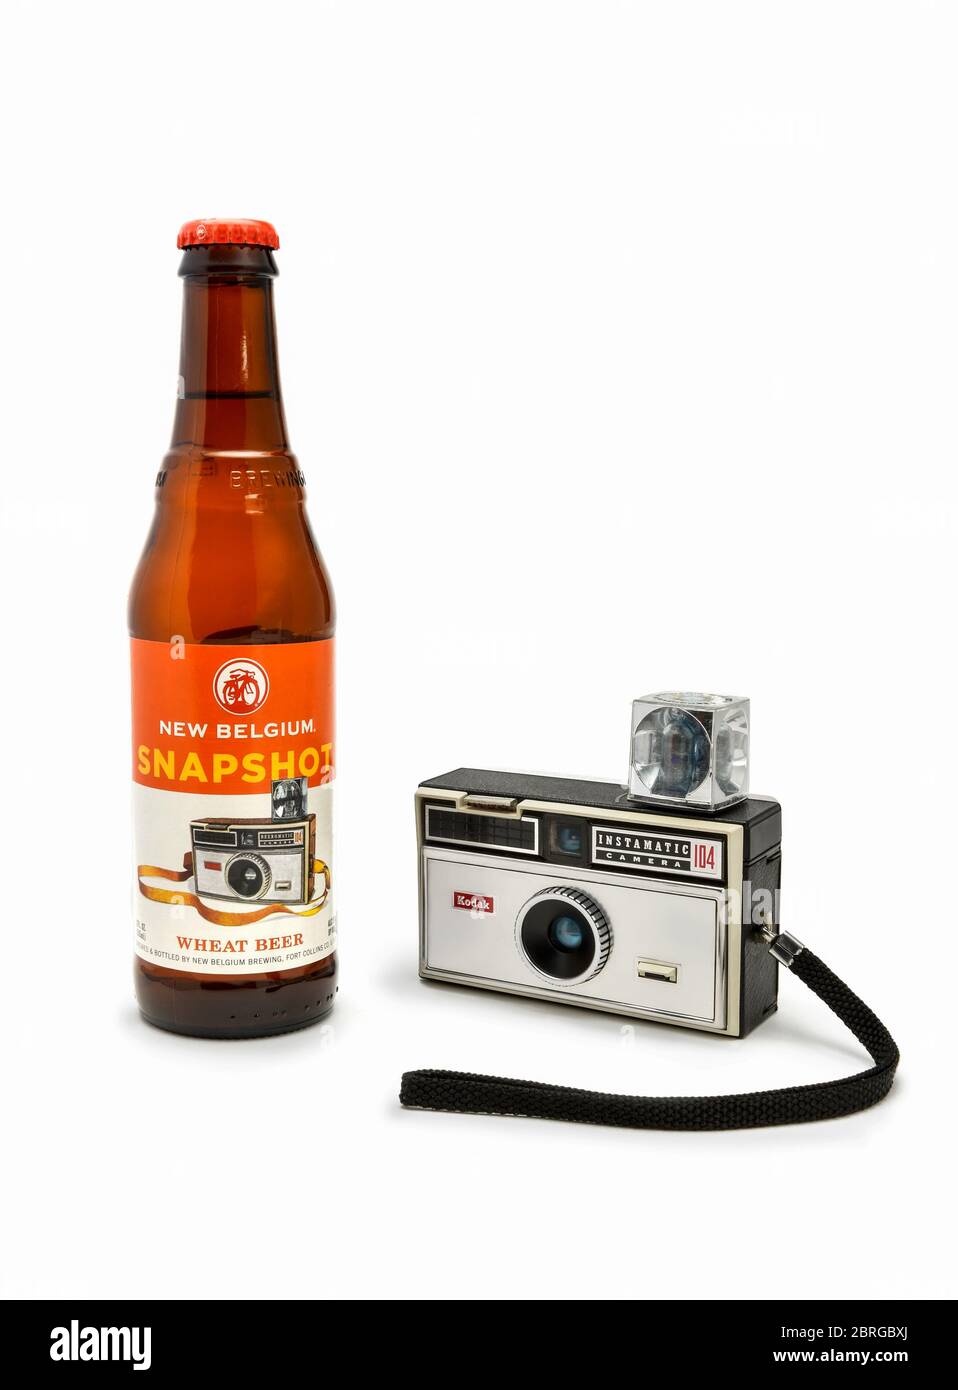 New Belgium Snapshot Beer with Kodak Camera Promo Stock Photo